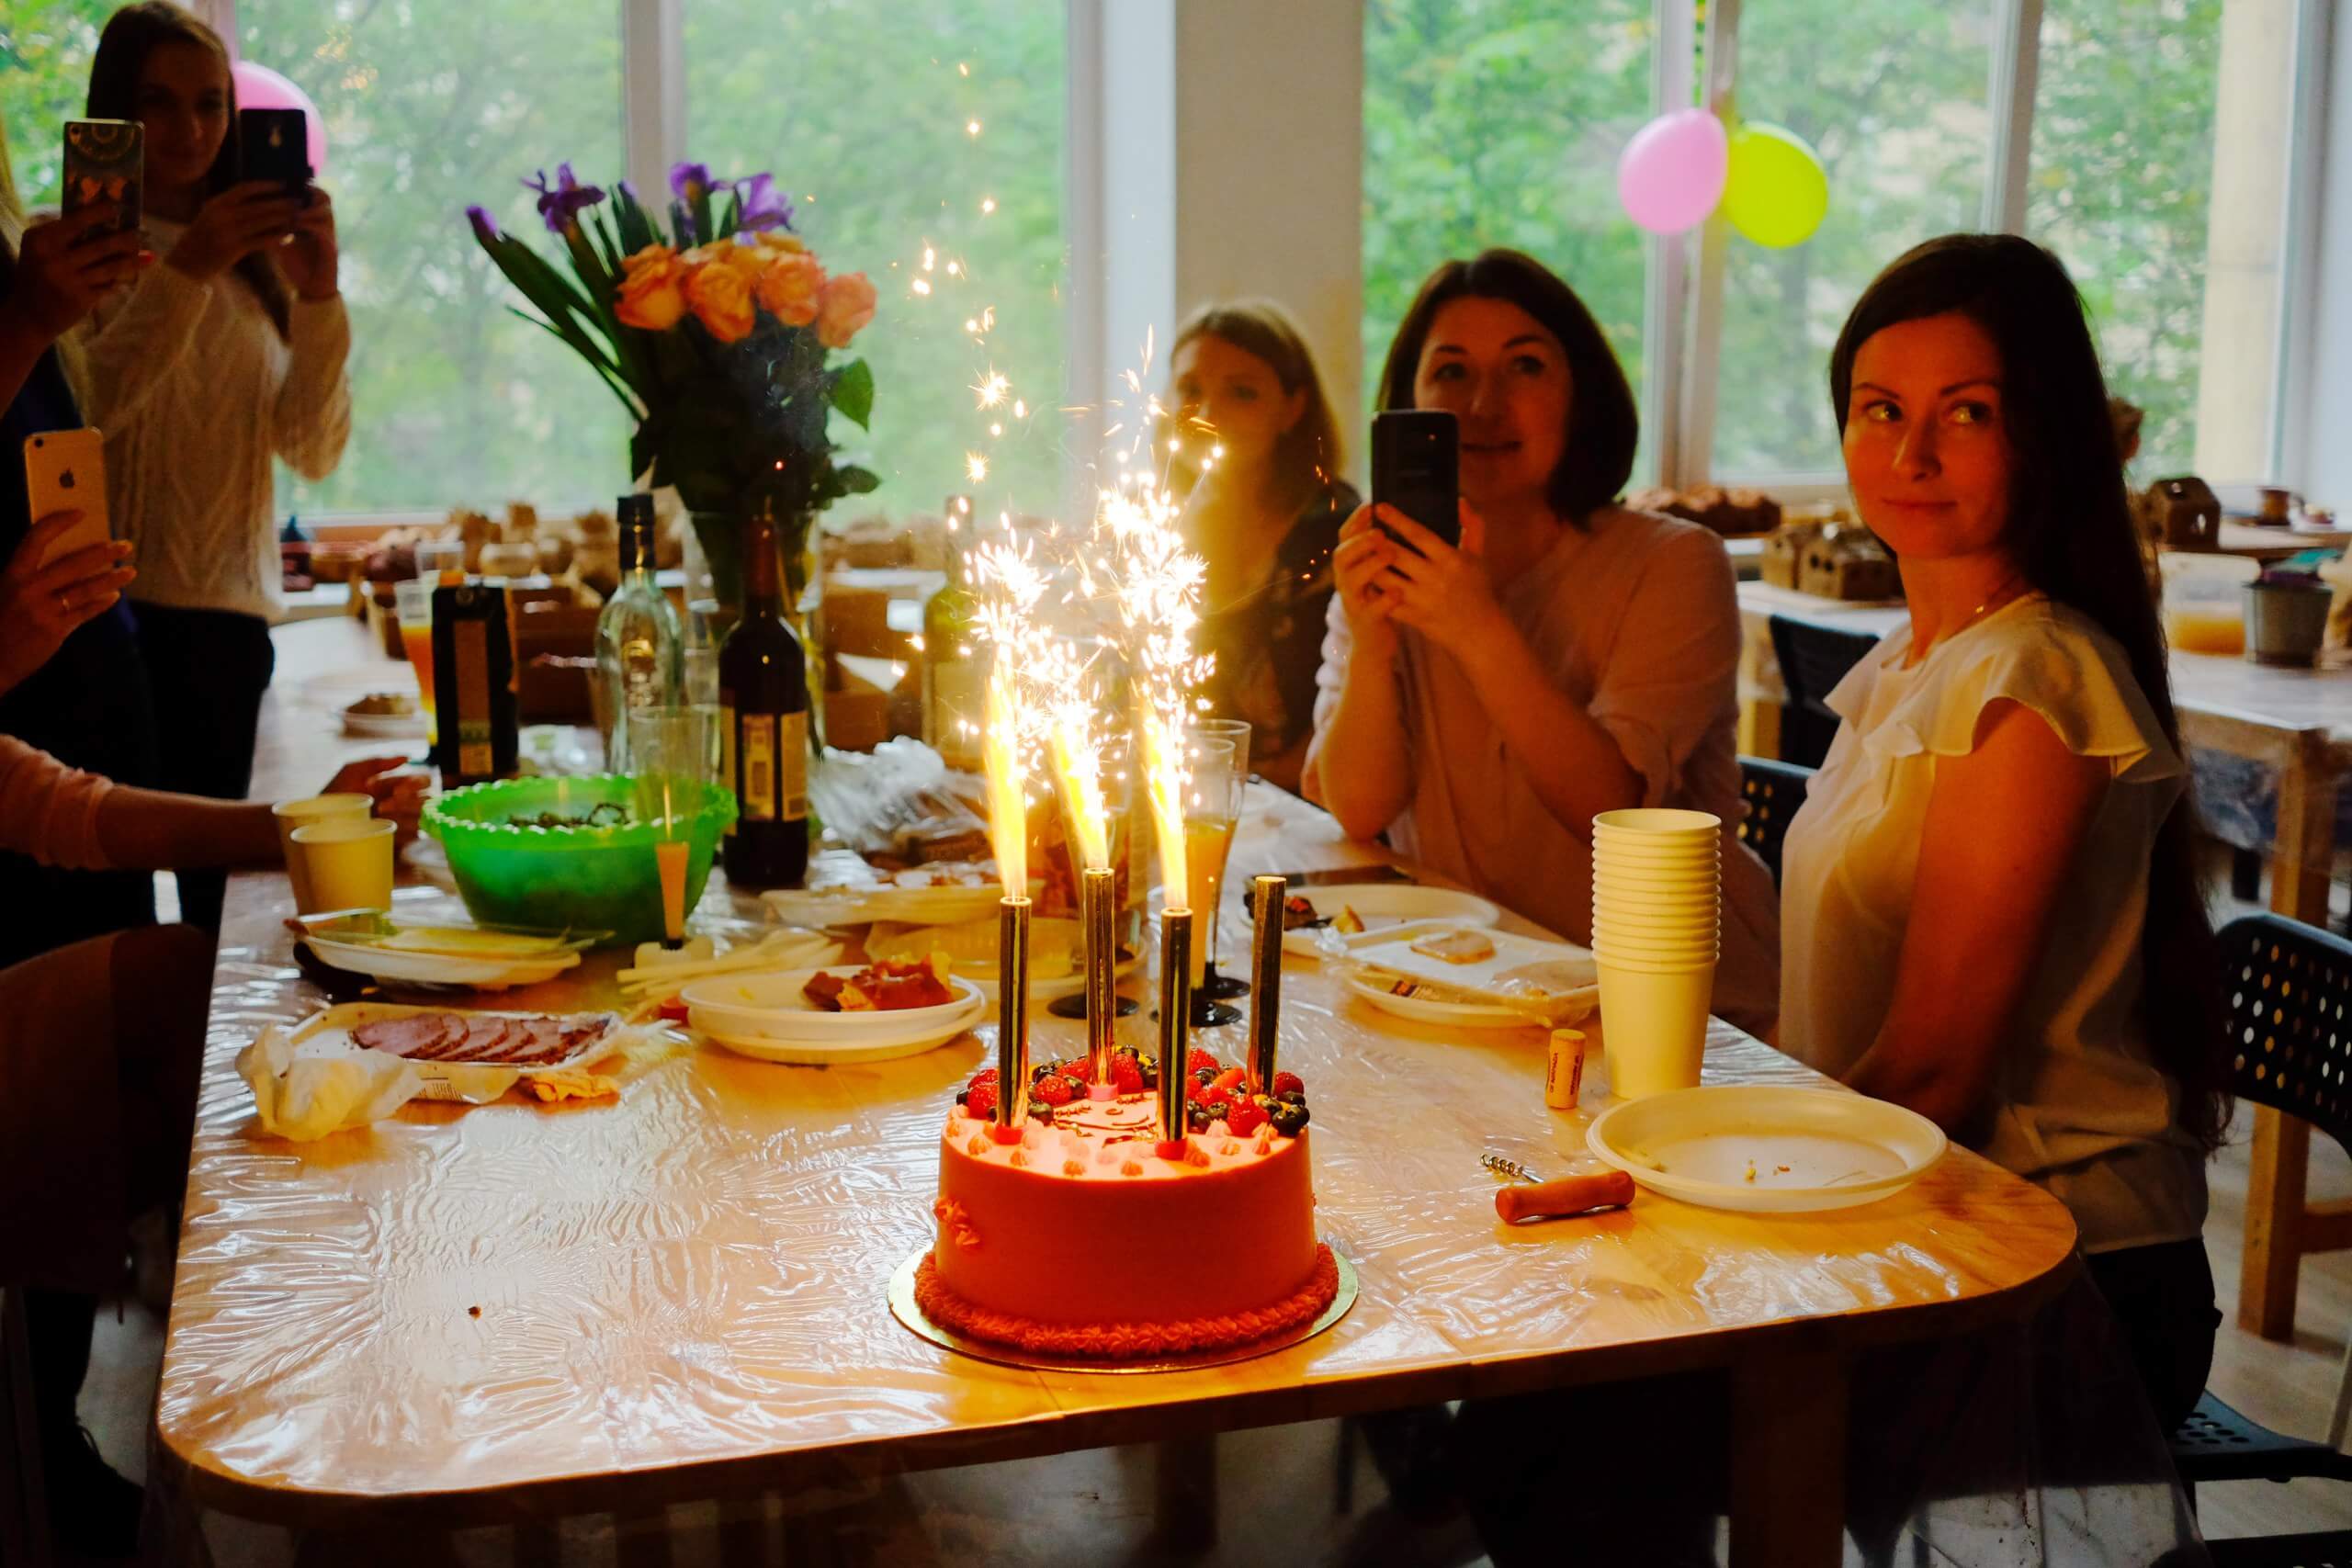 Отмечаем день рождения в ресторане: советы и идеи  | lifeforjoy